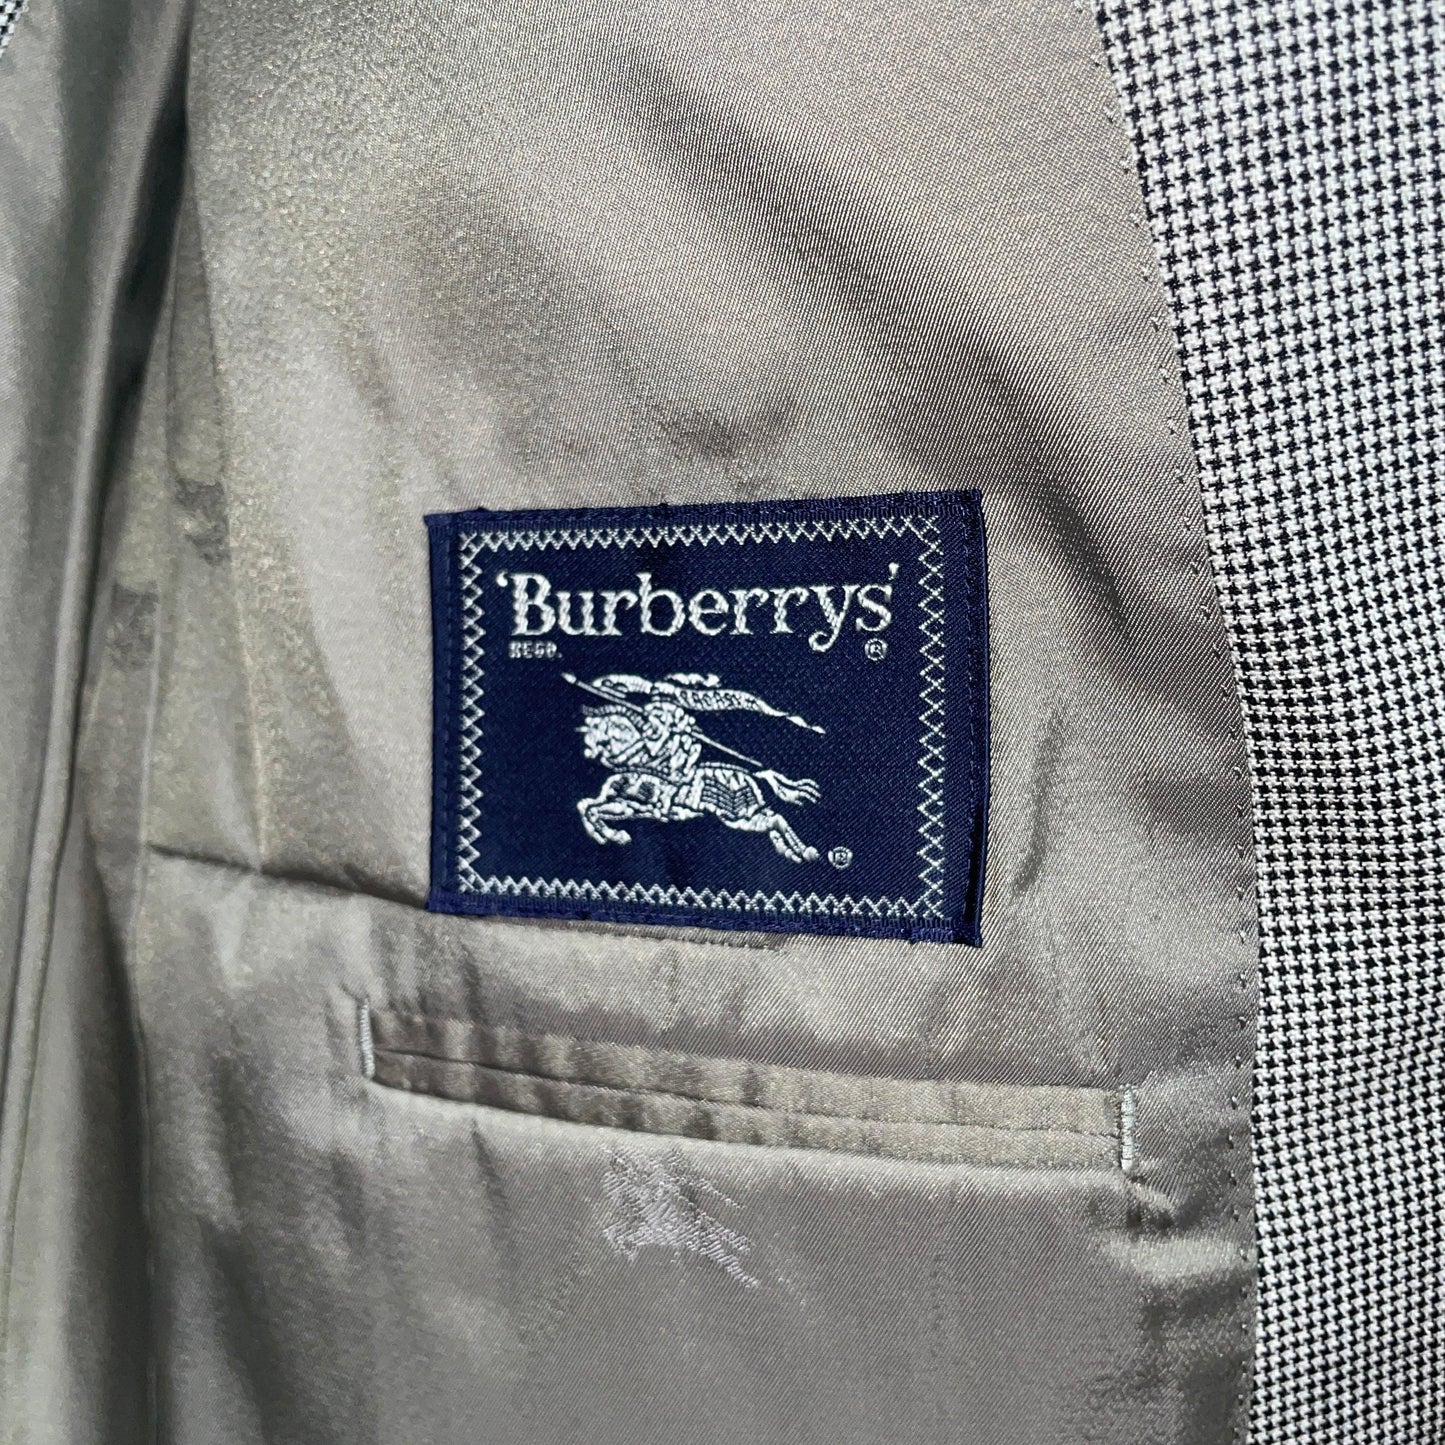 burberrys blazer burberry blazer houndstooth pattern